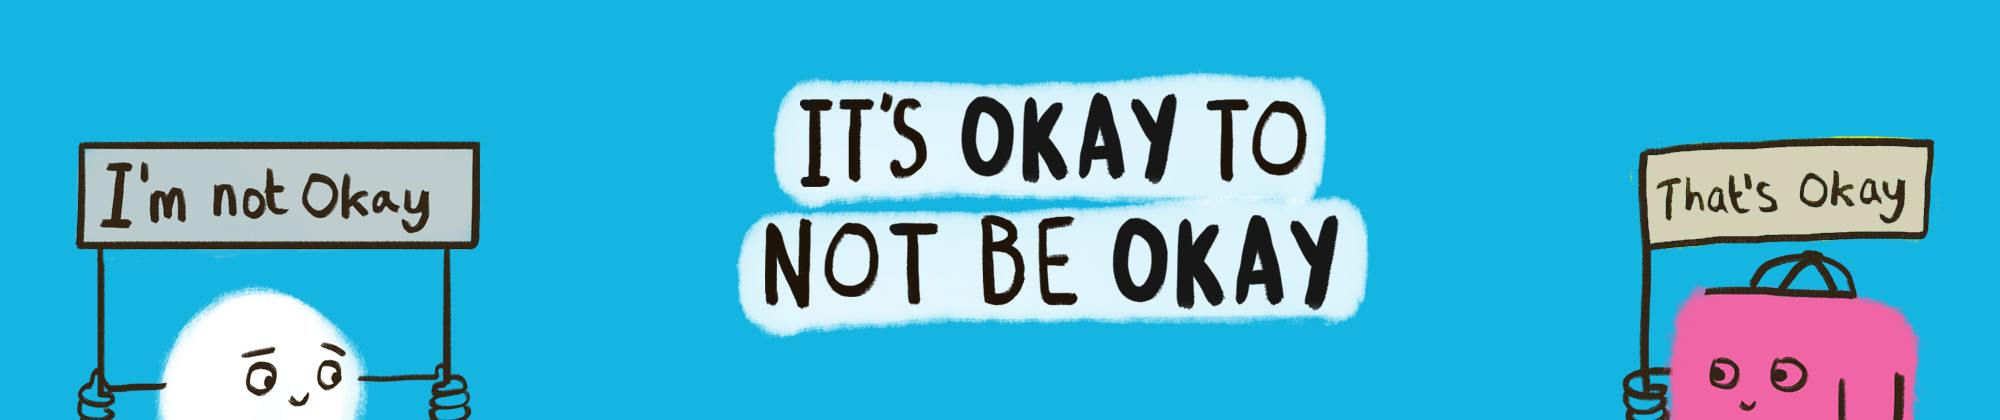 It's okay not to be okay image